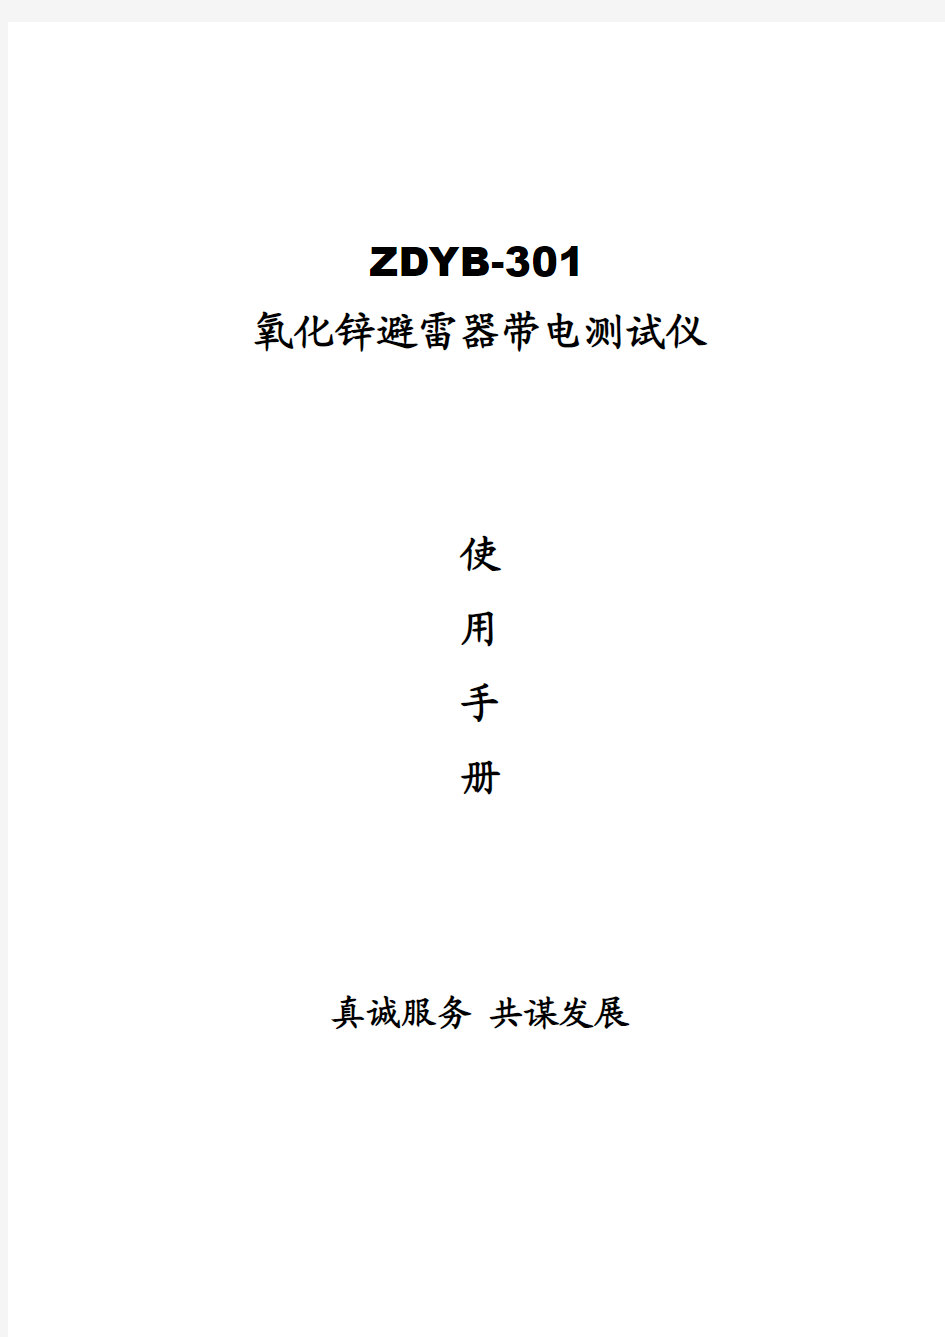 ZDYB-301氧化锌避雷器带电测试仪厂家产品手册